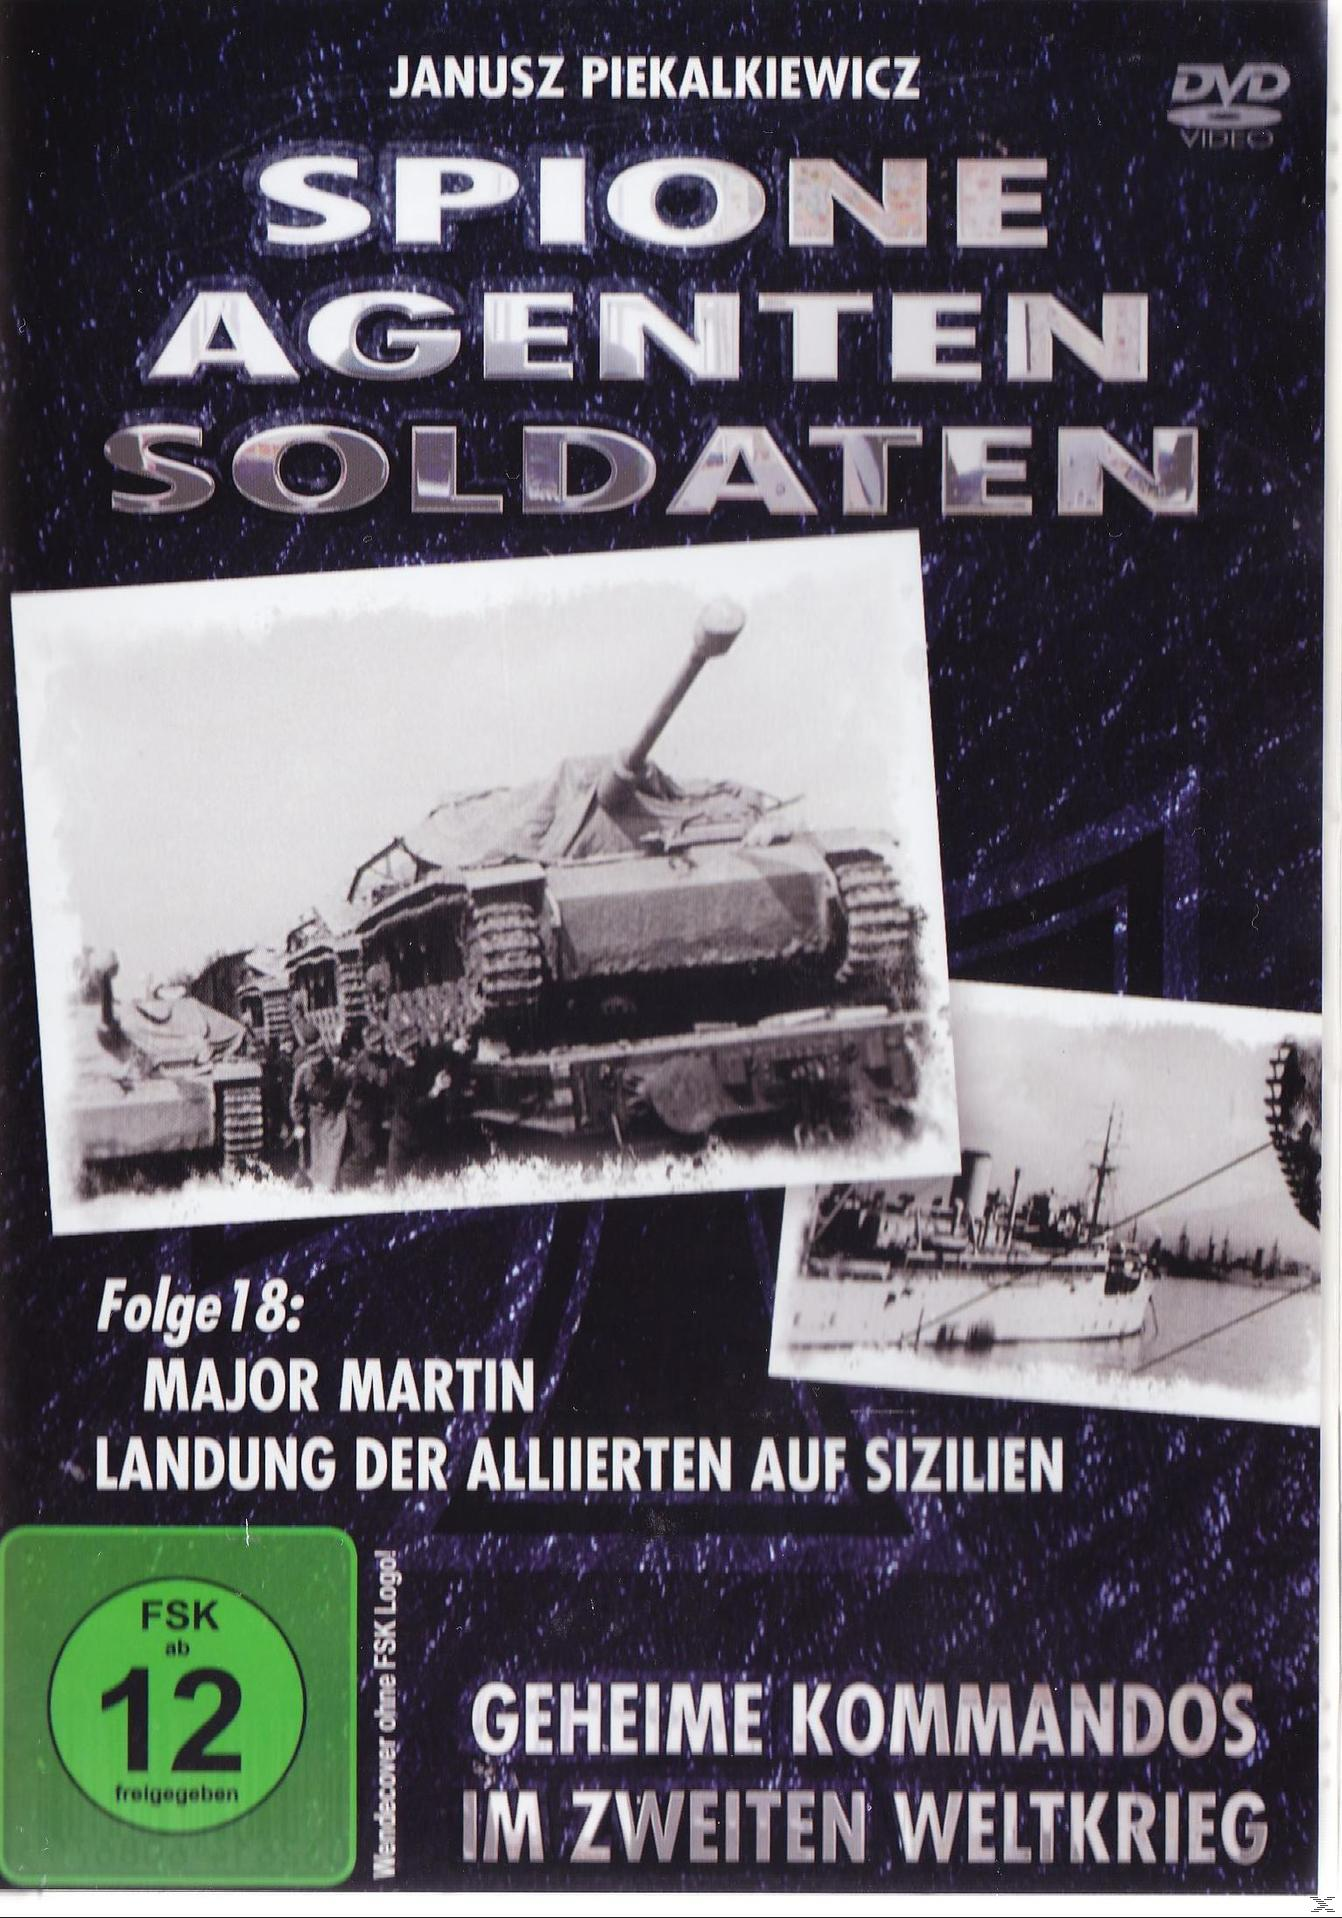 Spione, Agenten, Soldaten, Folge - Martin: auf Sizilien 18 Alliierten Major der DVD Landung